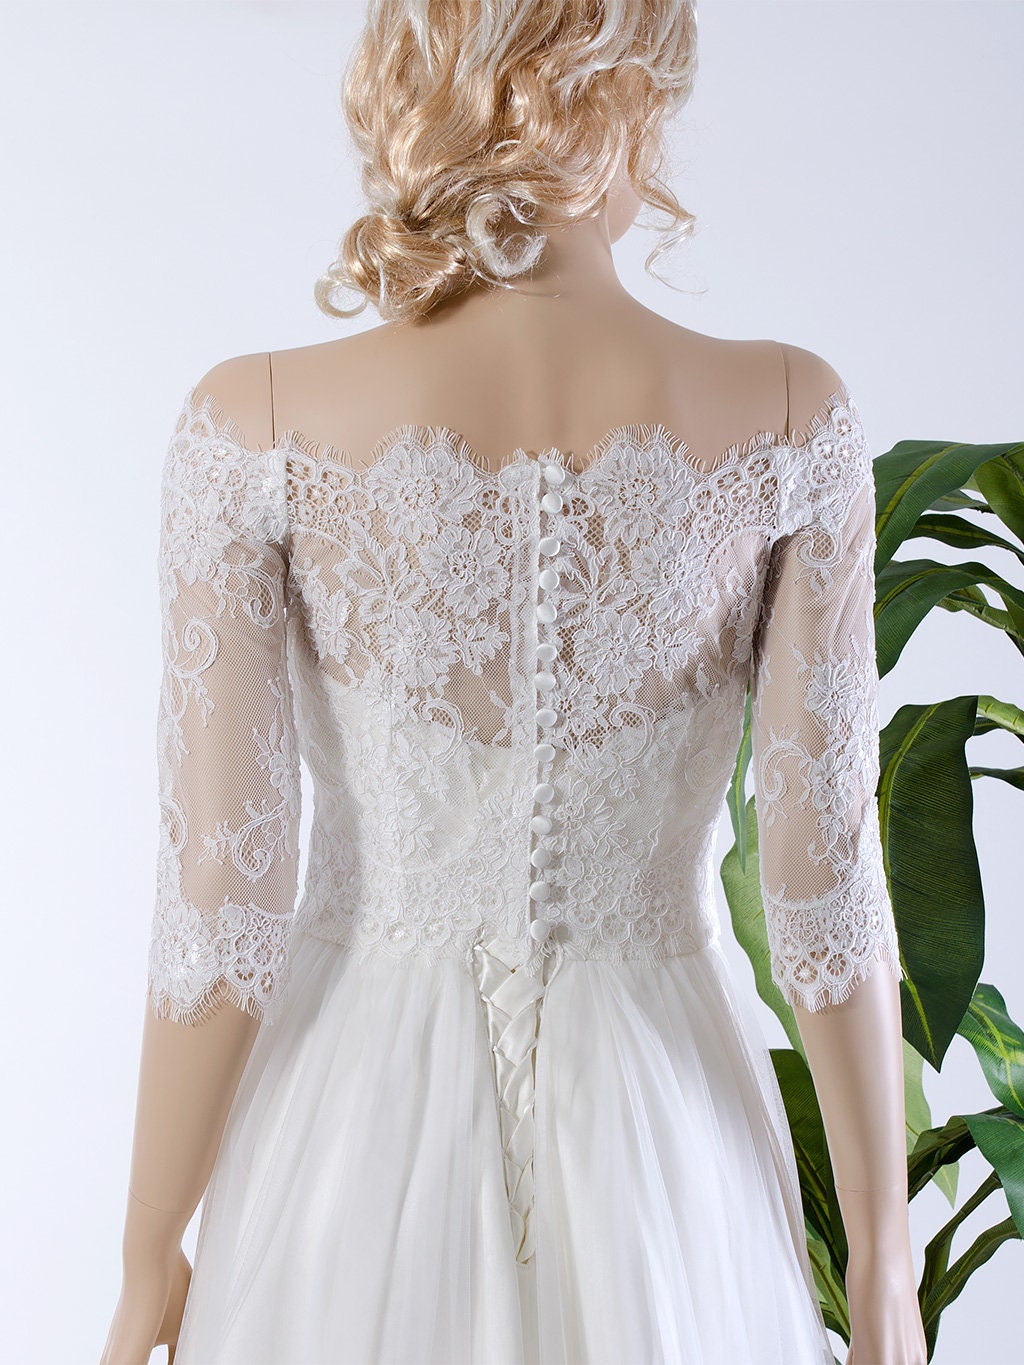 Bridal bolero light ivory lace bolero wedding bolero wedding jacket lace shrug bridal lace topper off shoulder lace bolero WJ035